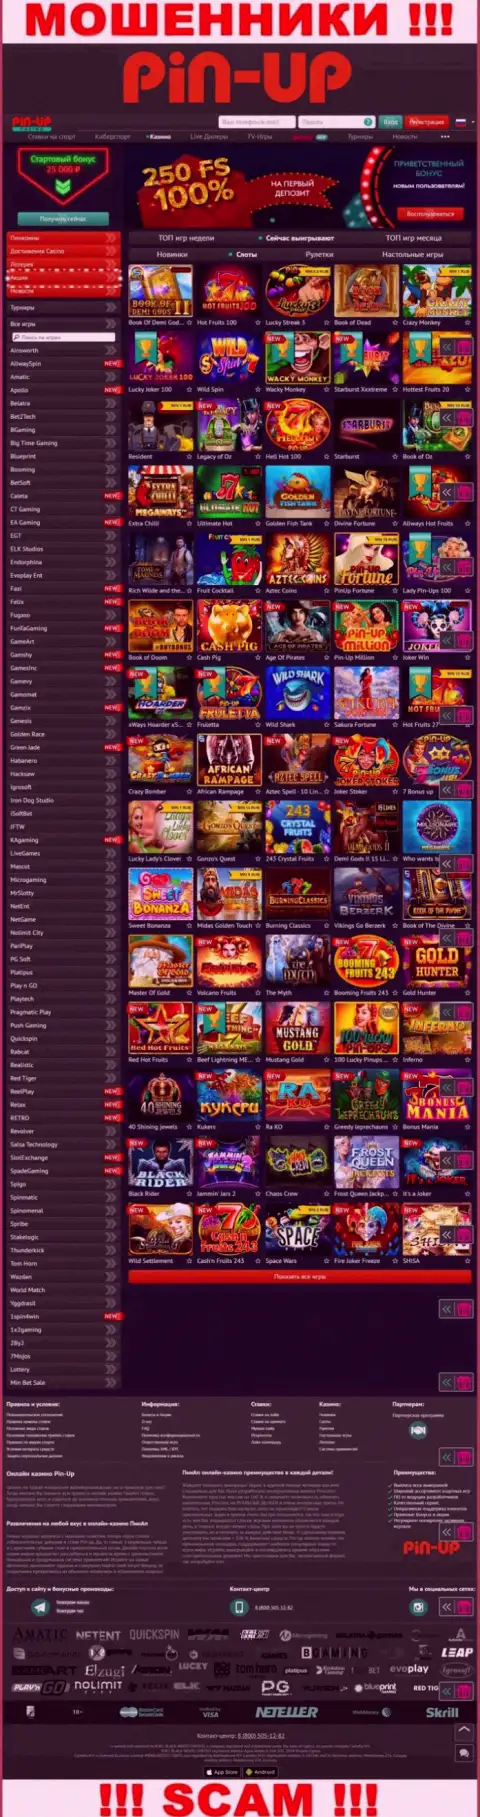 Pin-Up Casino - это официальный сайт интернет-лохотронщиков Pin Up Casino